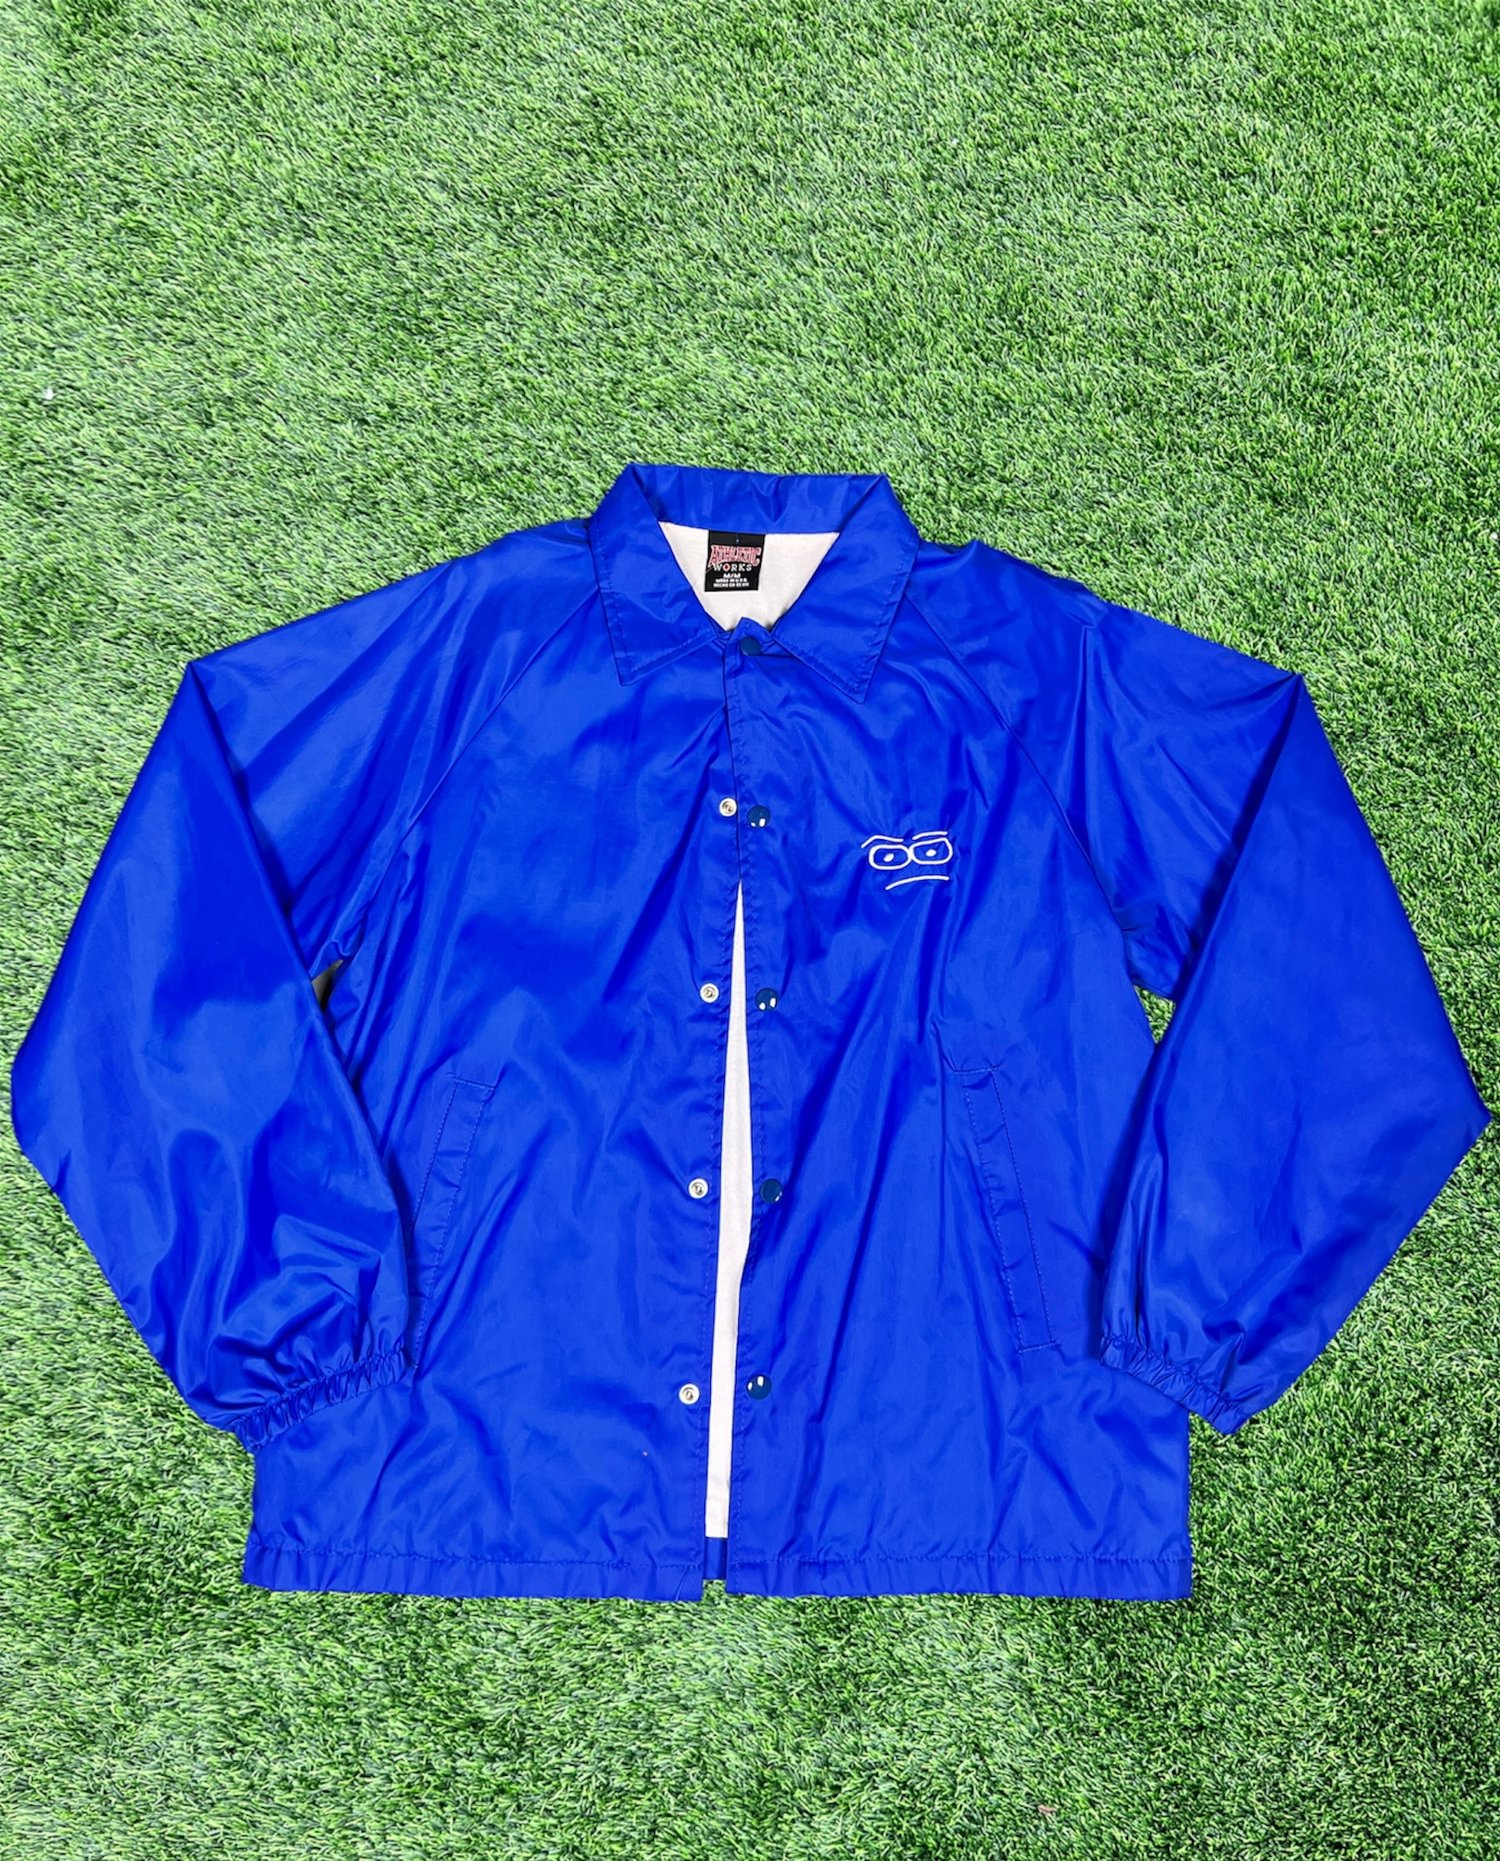 RBF Renewal - Royal Blue Collared Jacket